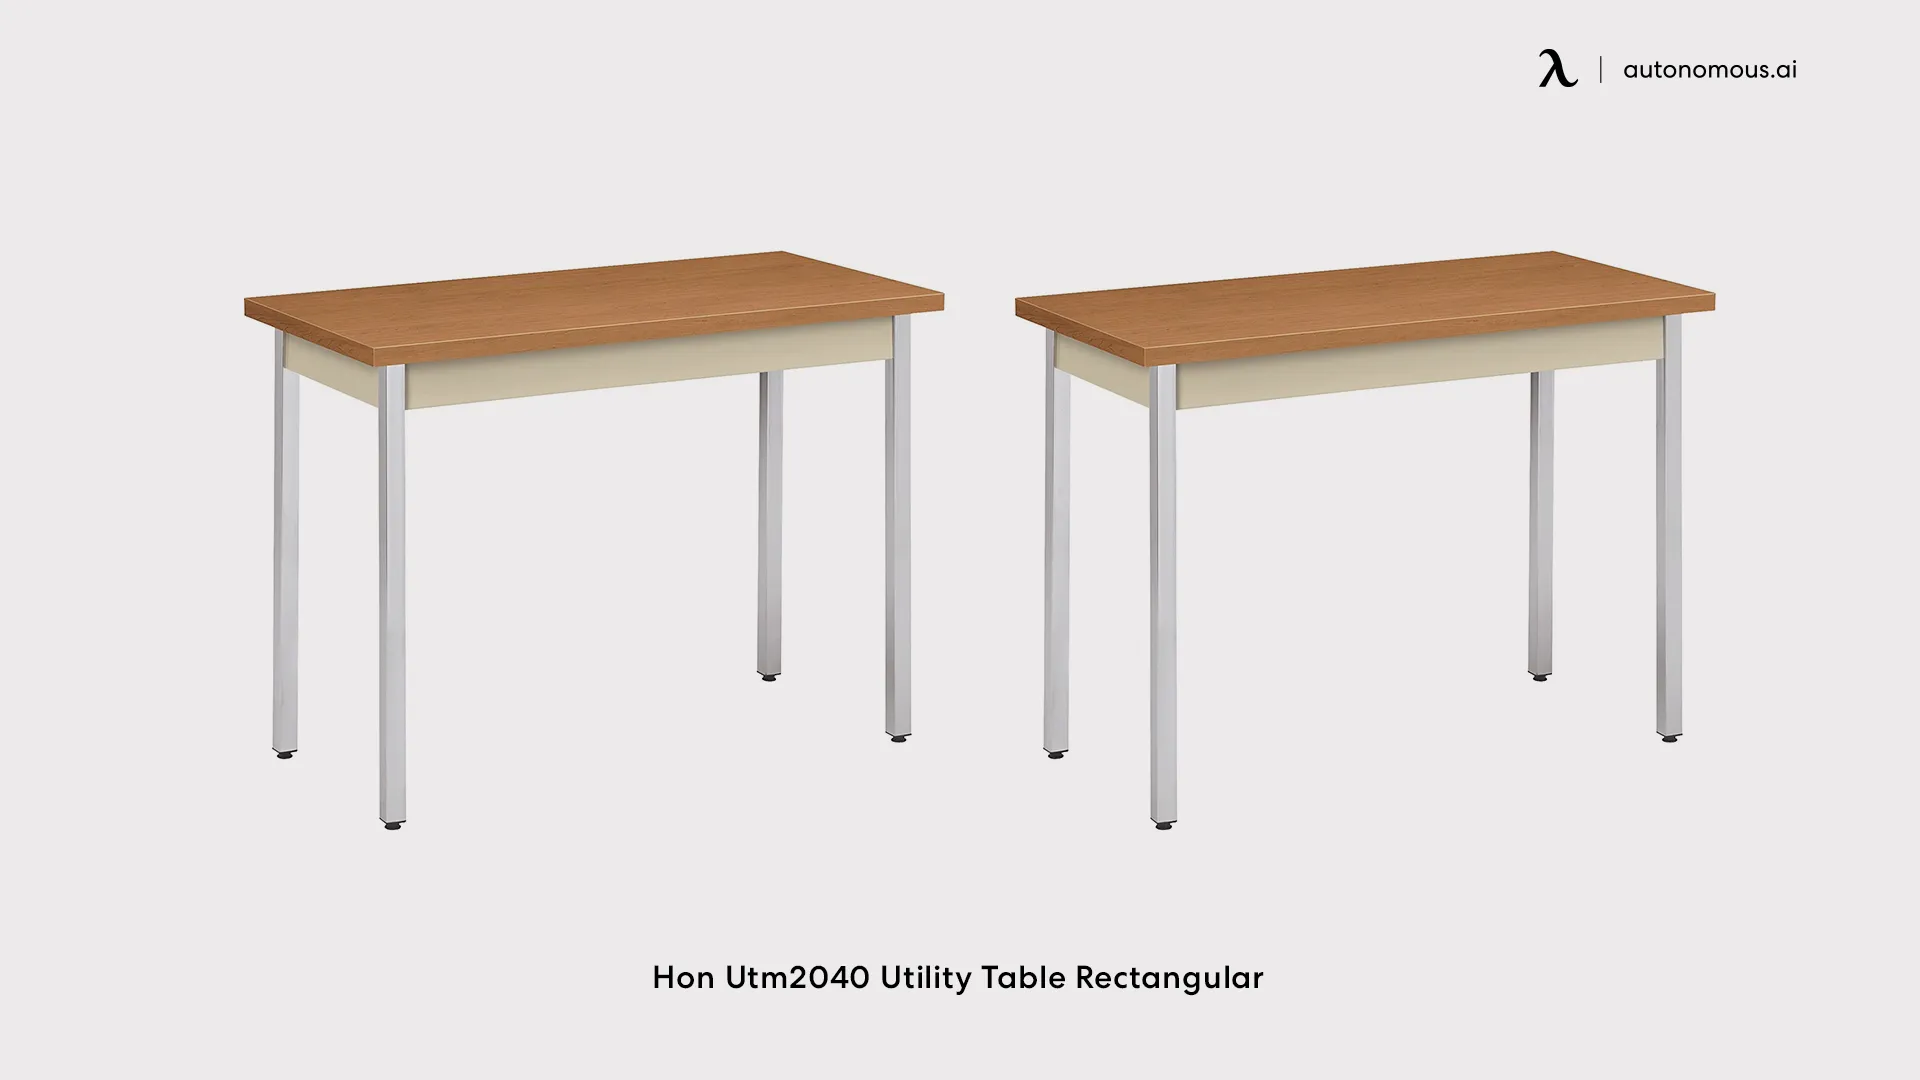 Hon Utm2040 Utility Table Rectangular